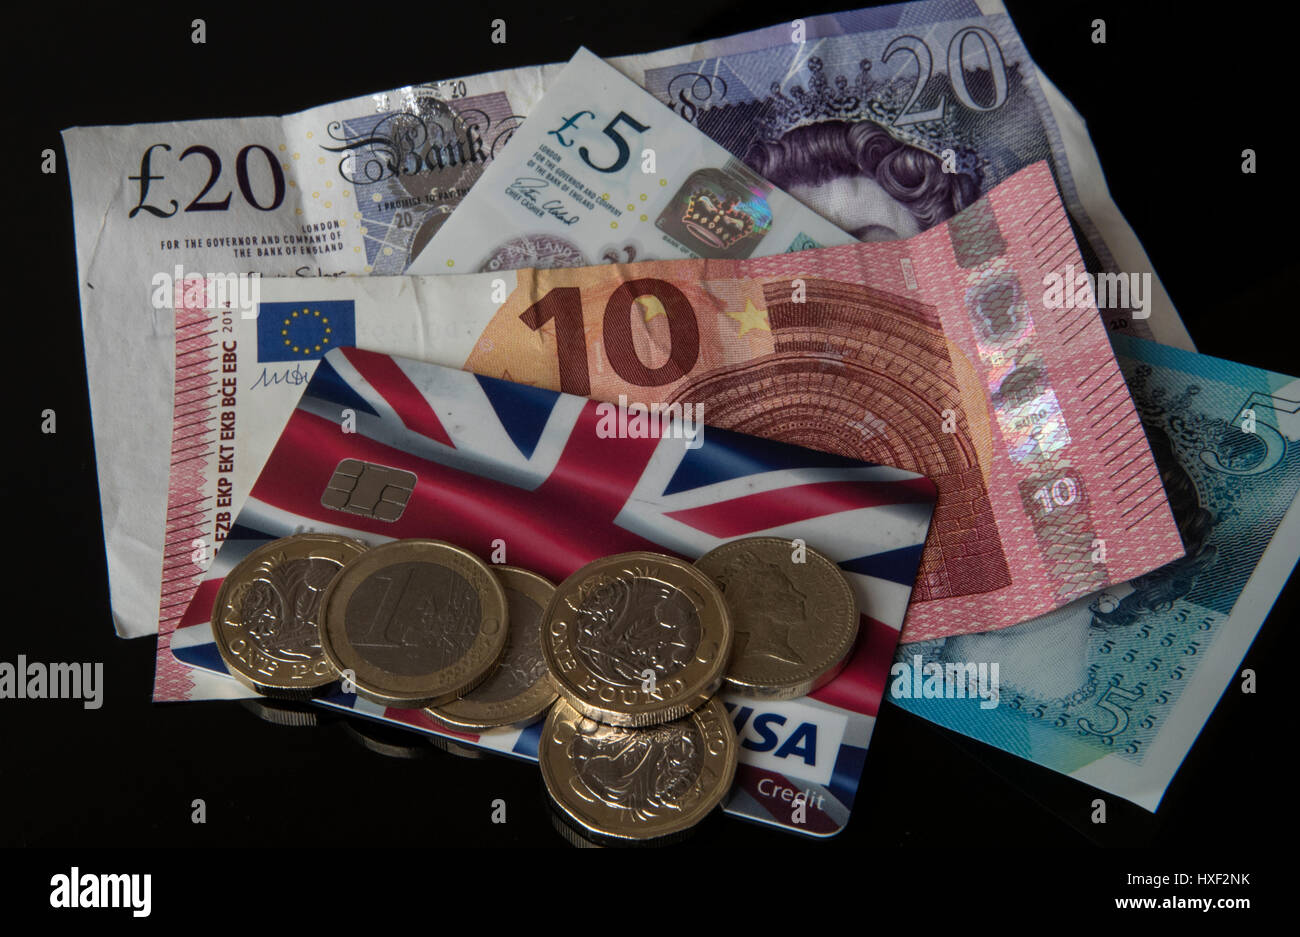 Neue 12-seitige £1- und 1-Euro-Münzen auf einer Kreditkarte mit einer neuen £5 Note, £20 Note, 10-Euro-Note in Liverpool, als die neue Pfund-Münze in Umlauf kam - mit frühen Kinderkrankheiten, die an Münzautomaten im ganzen Land zu erwarten waren. Stockfoto